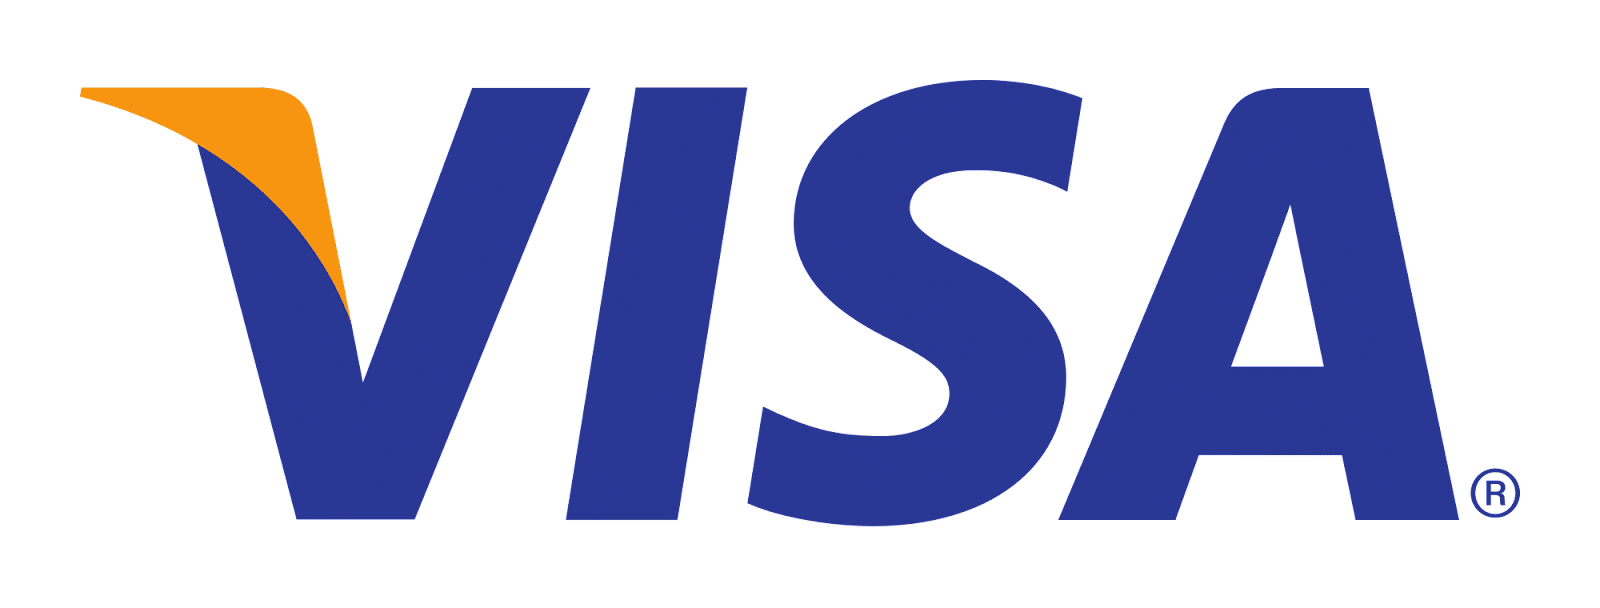 Casinomedvisa.com visa-logo-png-2023